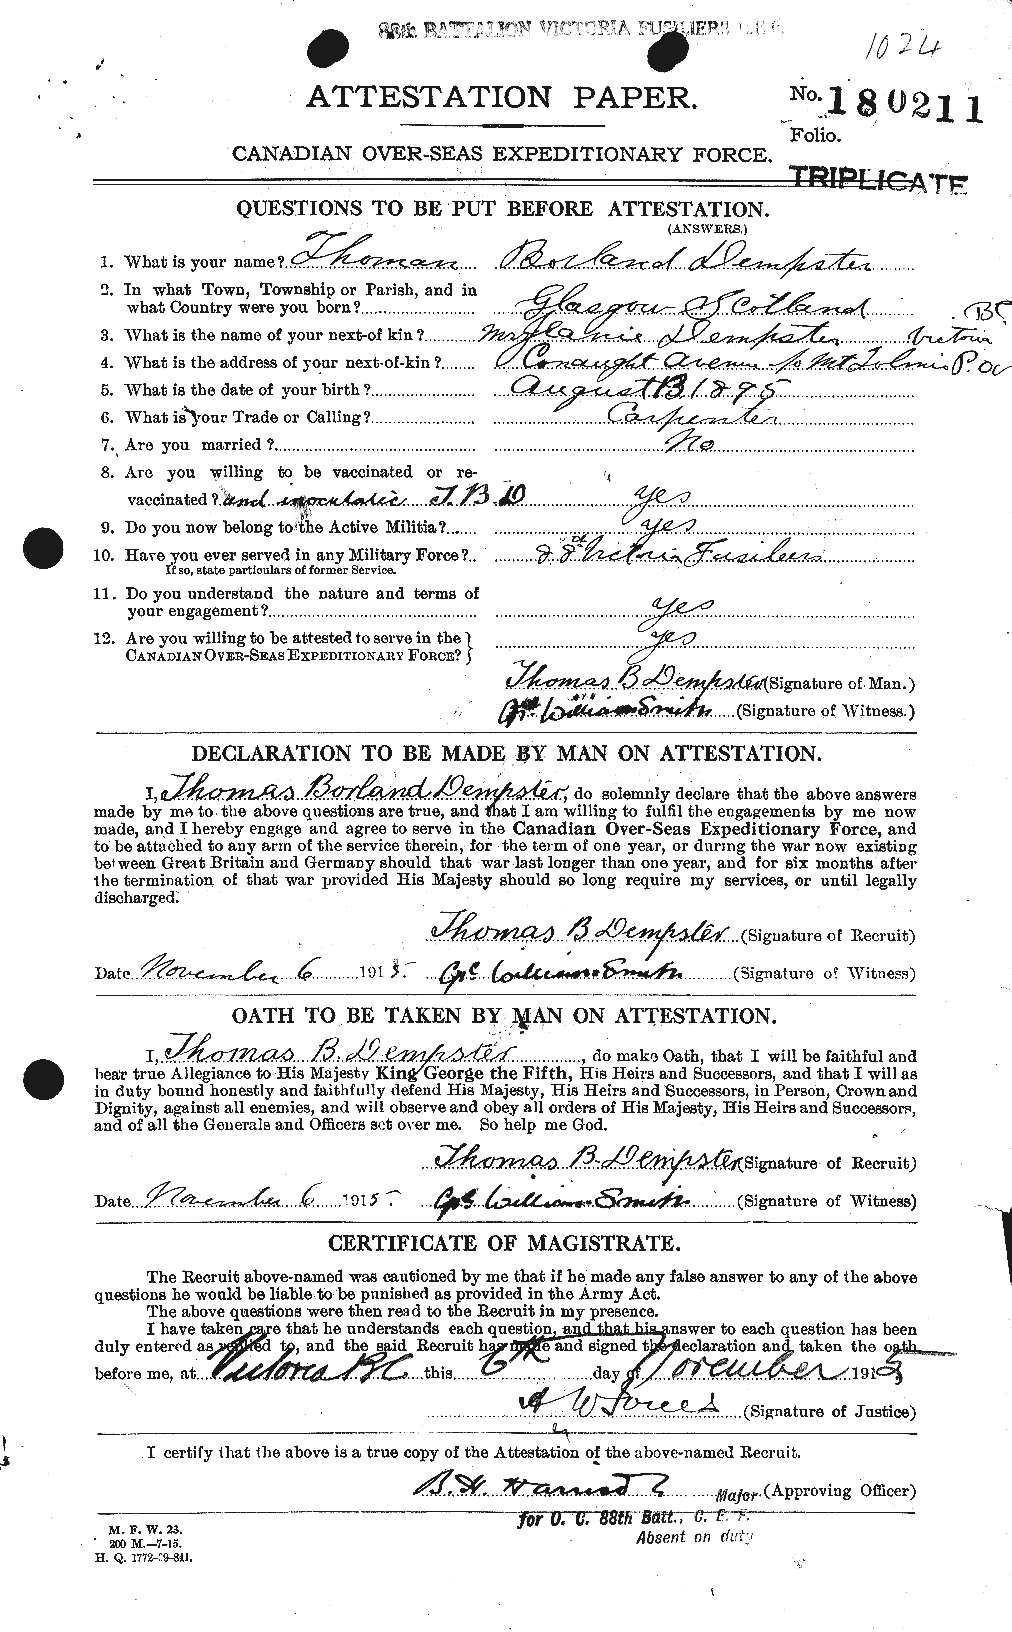 Dossiers du Personnel de la Première Guerre mondiale - CEC 286977a